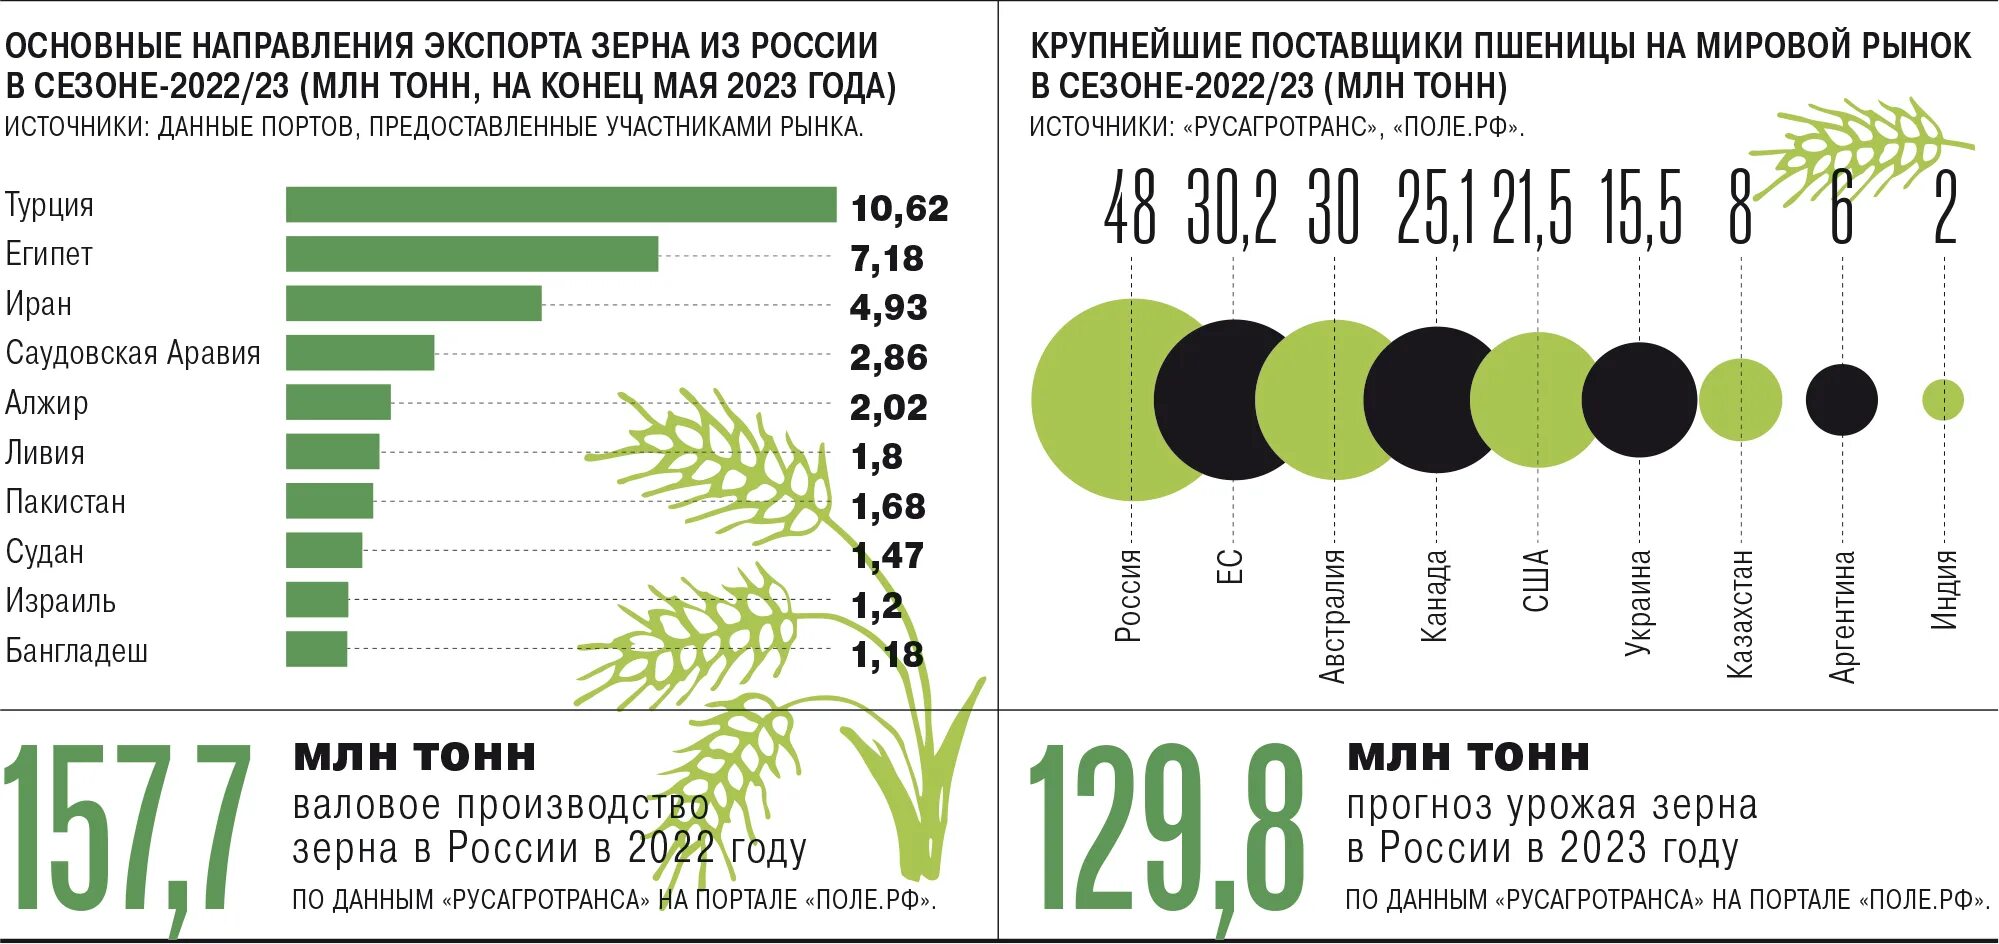 Мировой рынок зерна страны. Экспорт пшеницы. Мировой рынок зерна. Крупнейшие импортеры пшеницы. Крупнейшие экспортеры пшеницы в России.